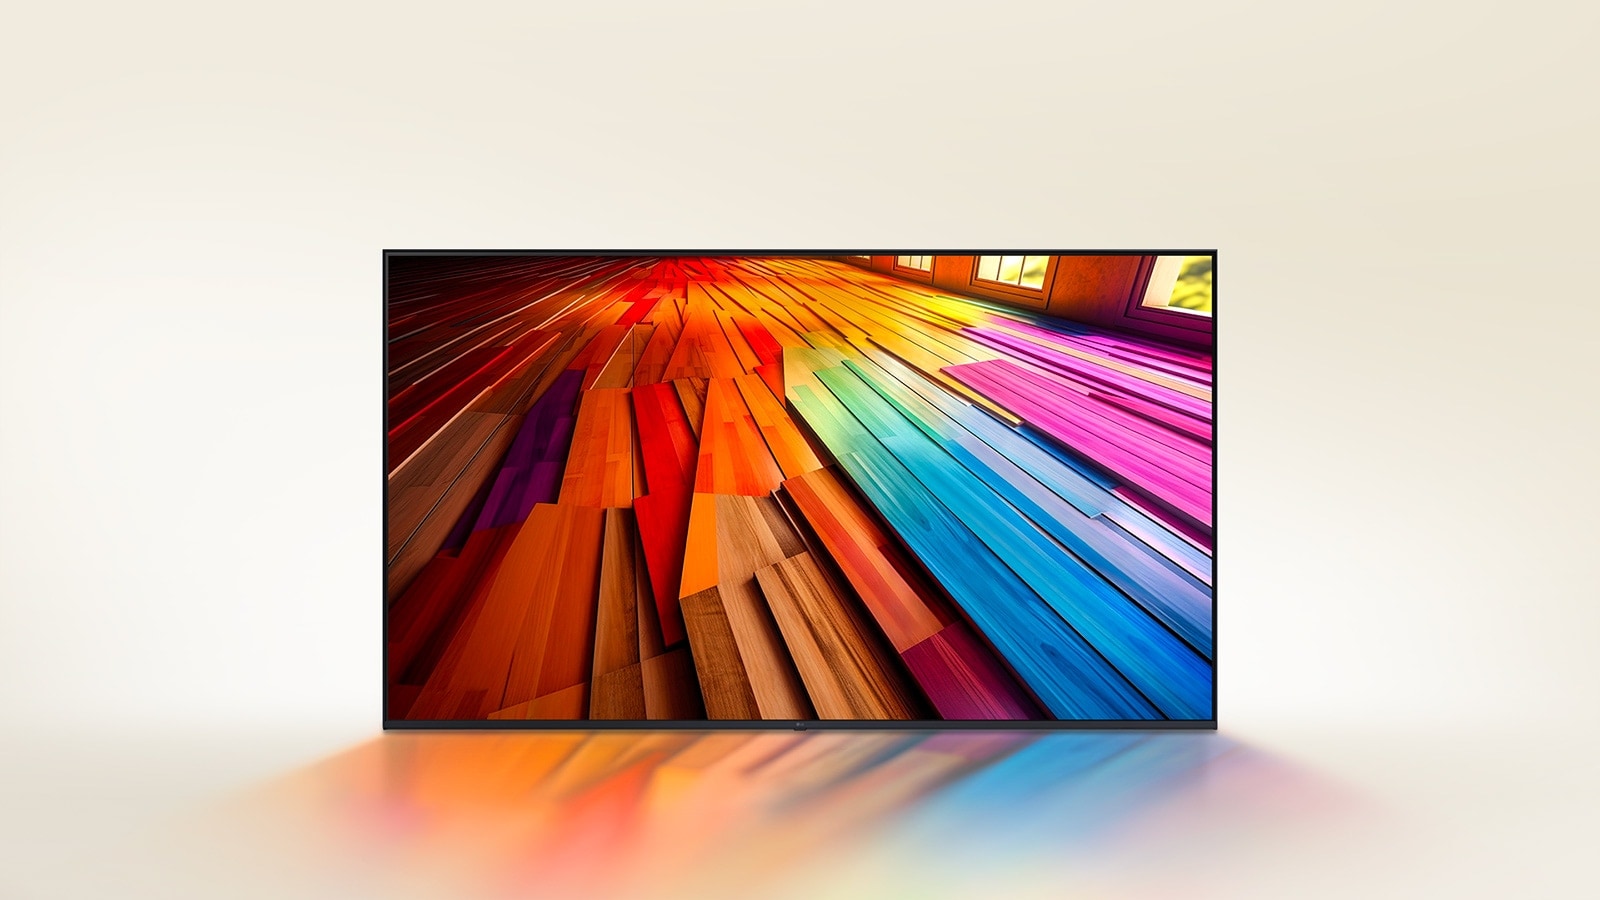 רצפת פרקט צבעונית נפרשת על מסך LG UHD.